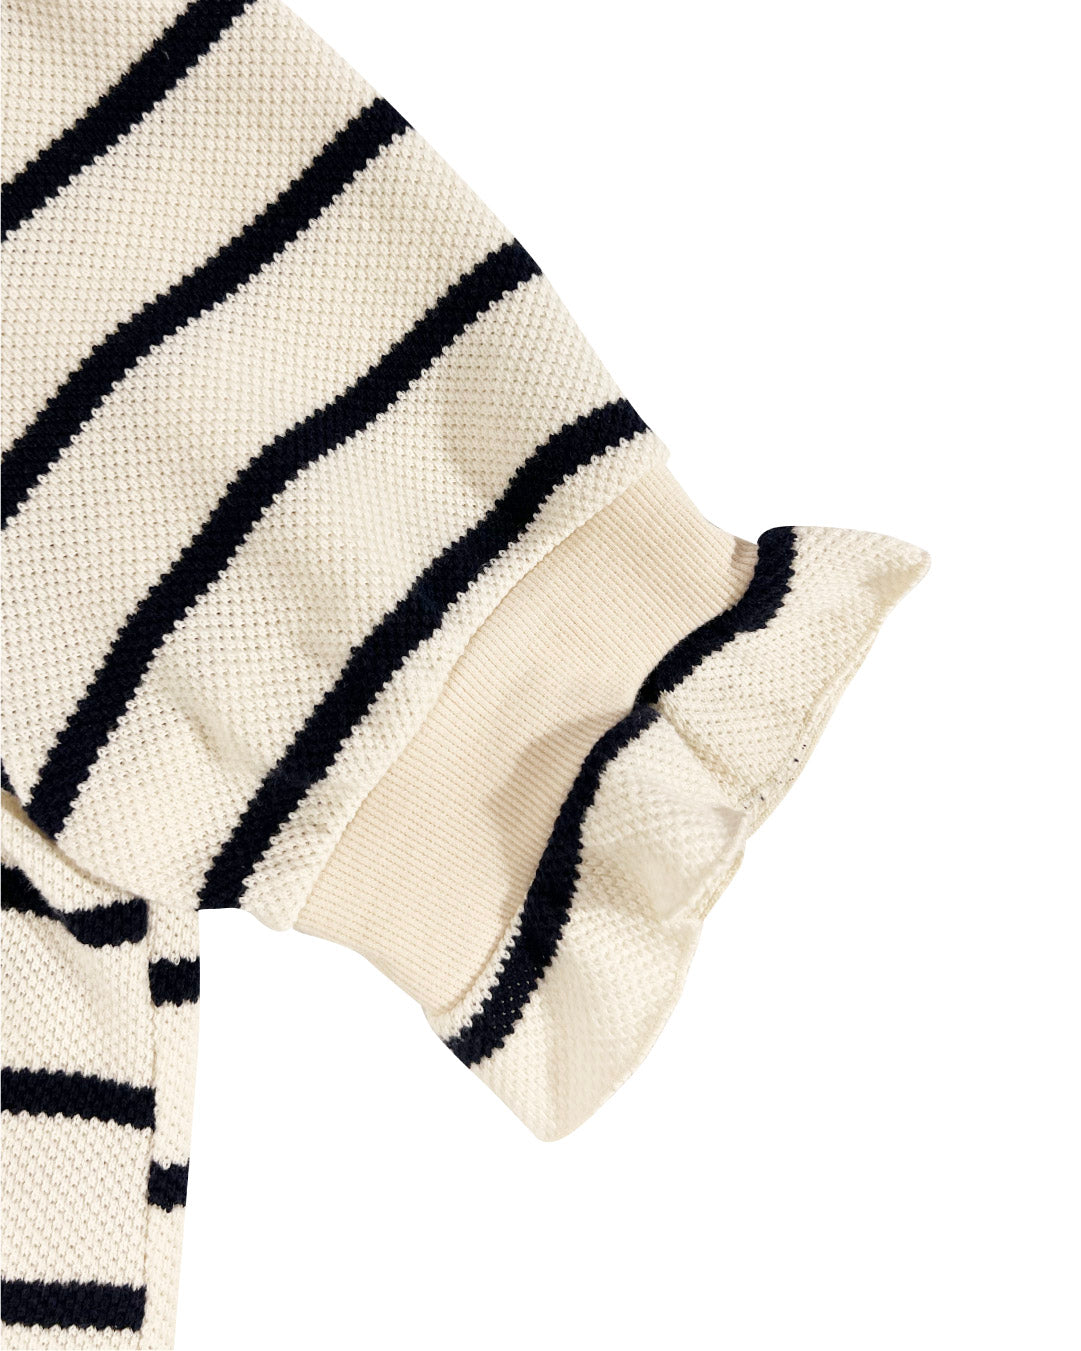 ボーダーフリルサマーニット / border frill summer knit – POPPY